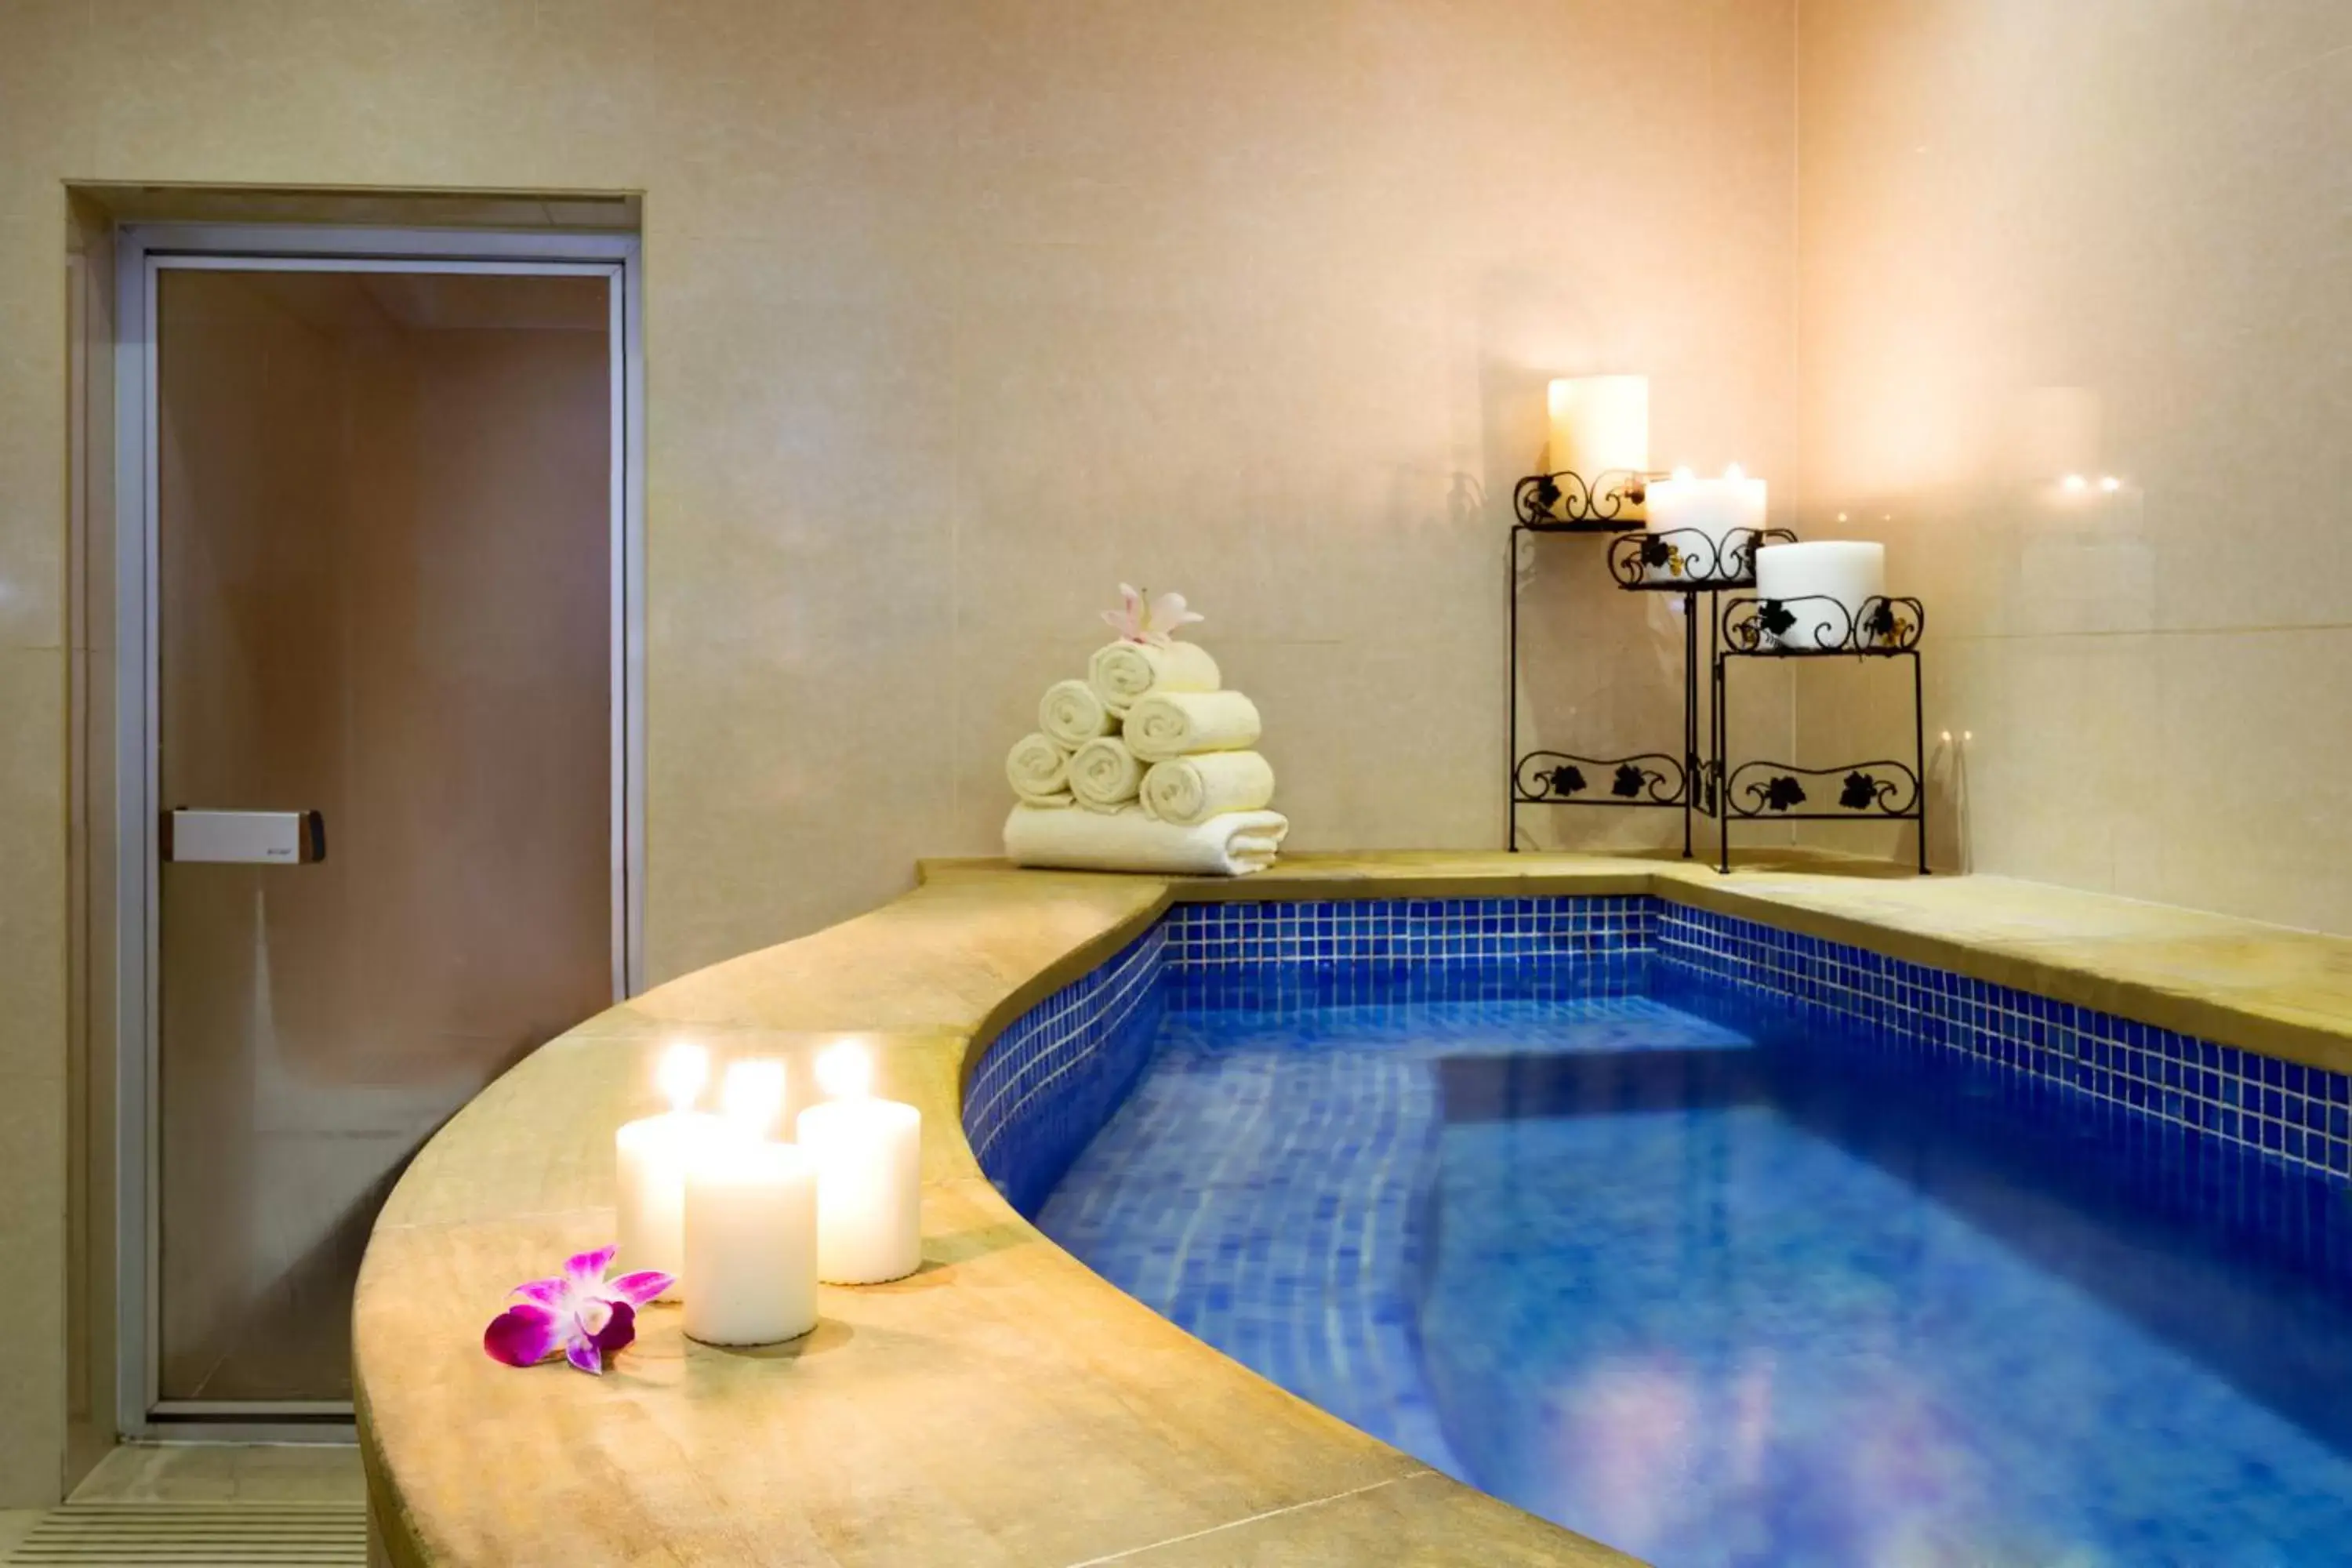 Hot Tub, Swimming Pool in Park Regis Kris Kin Hotel